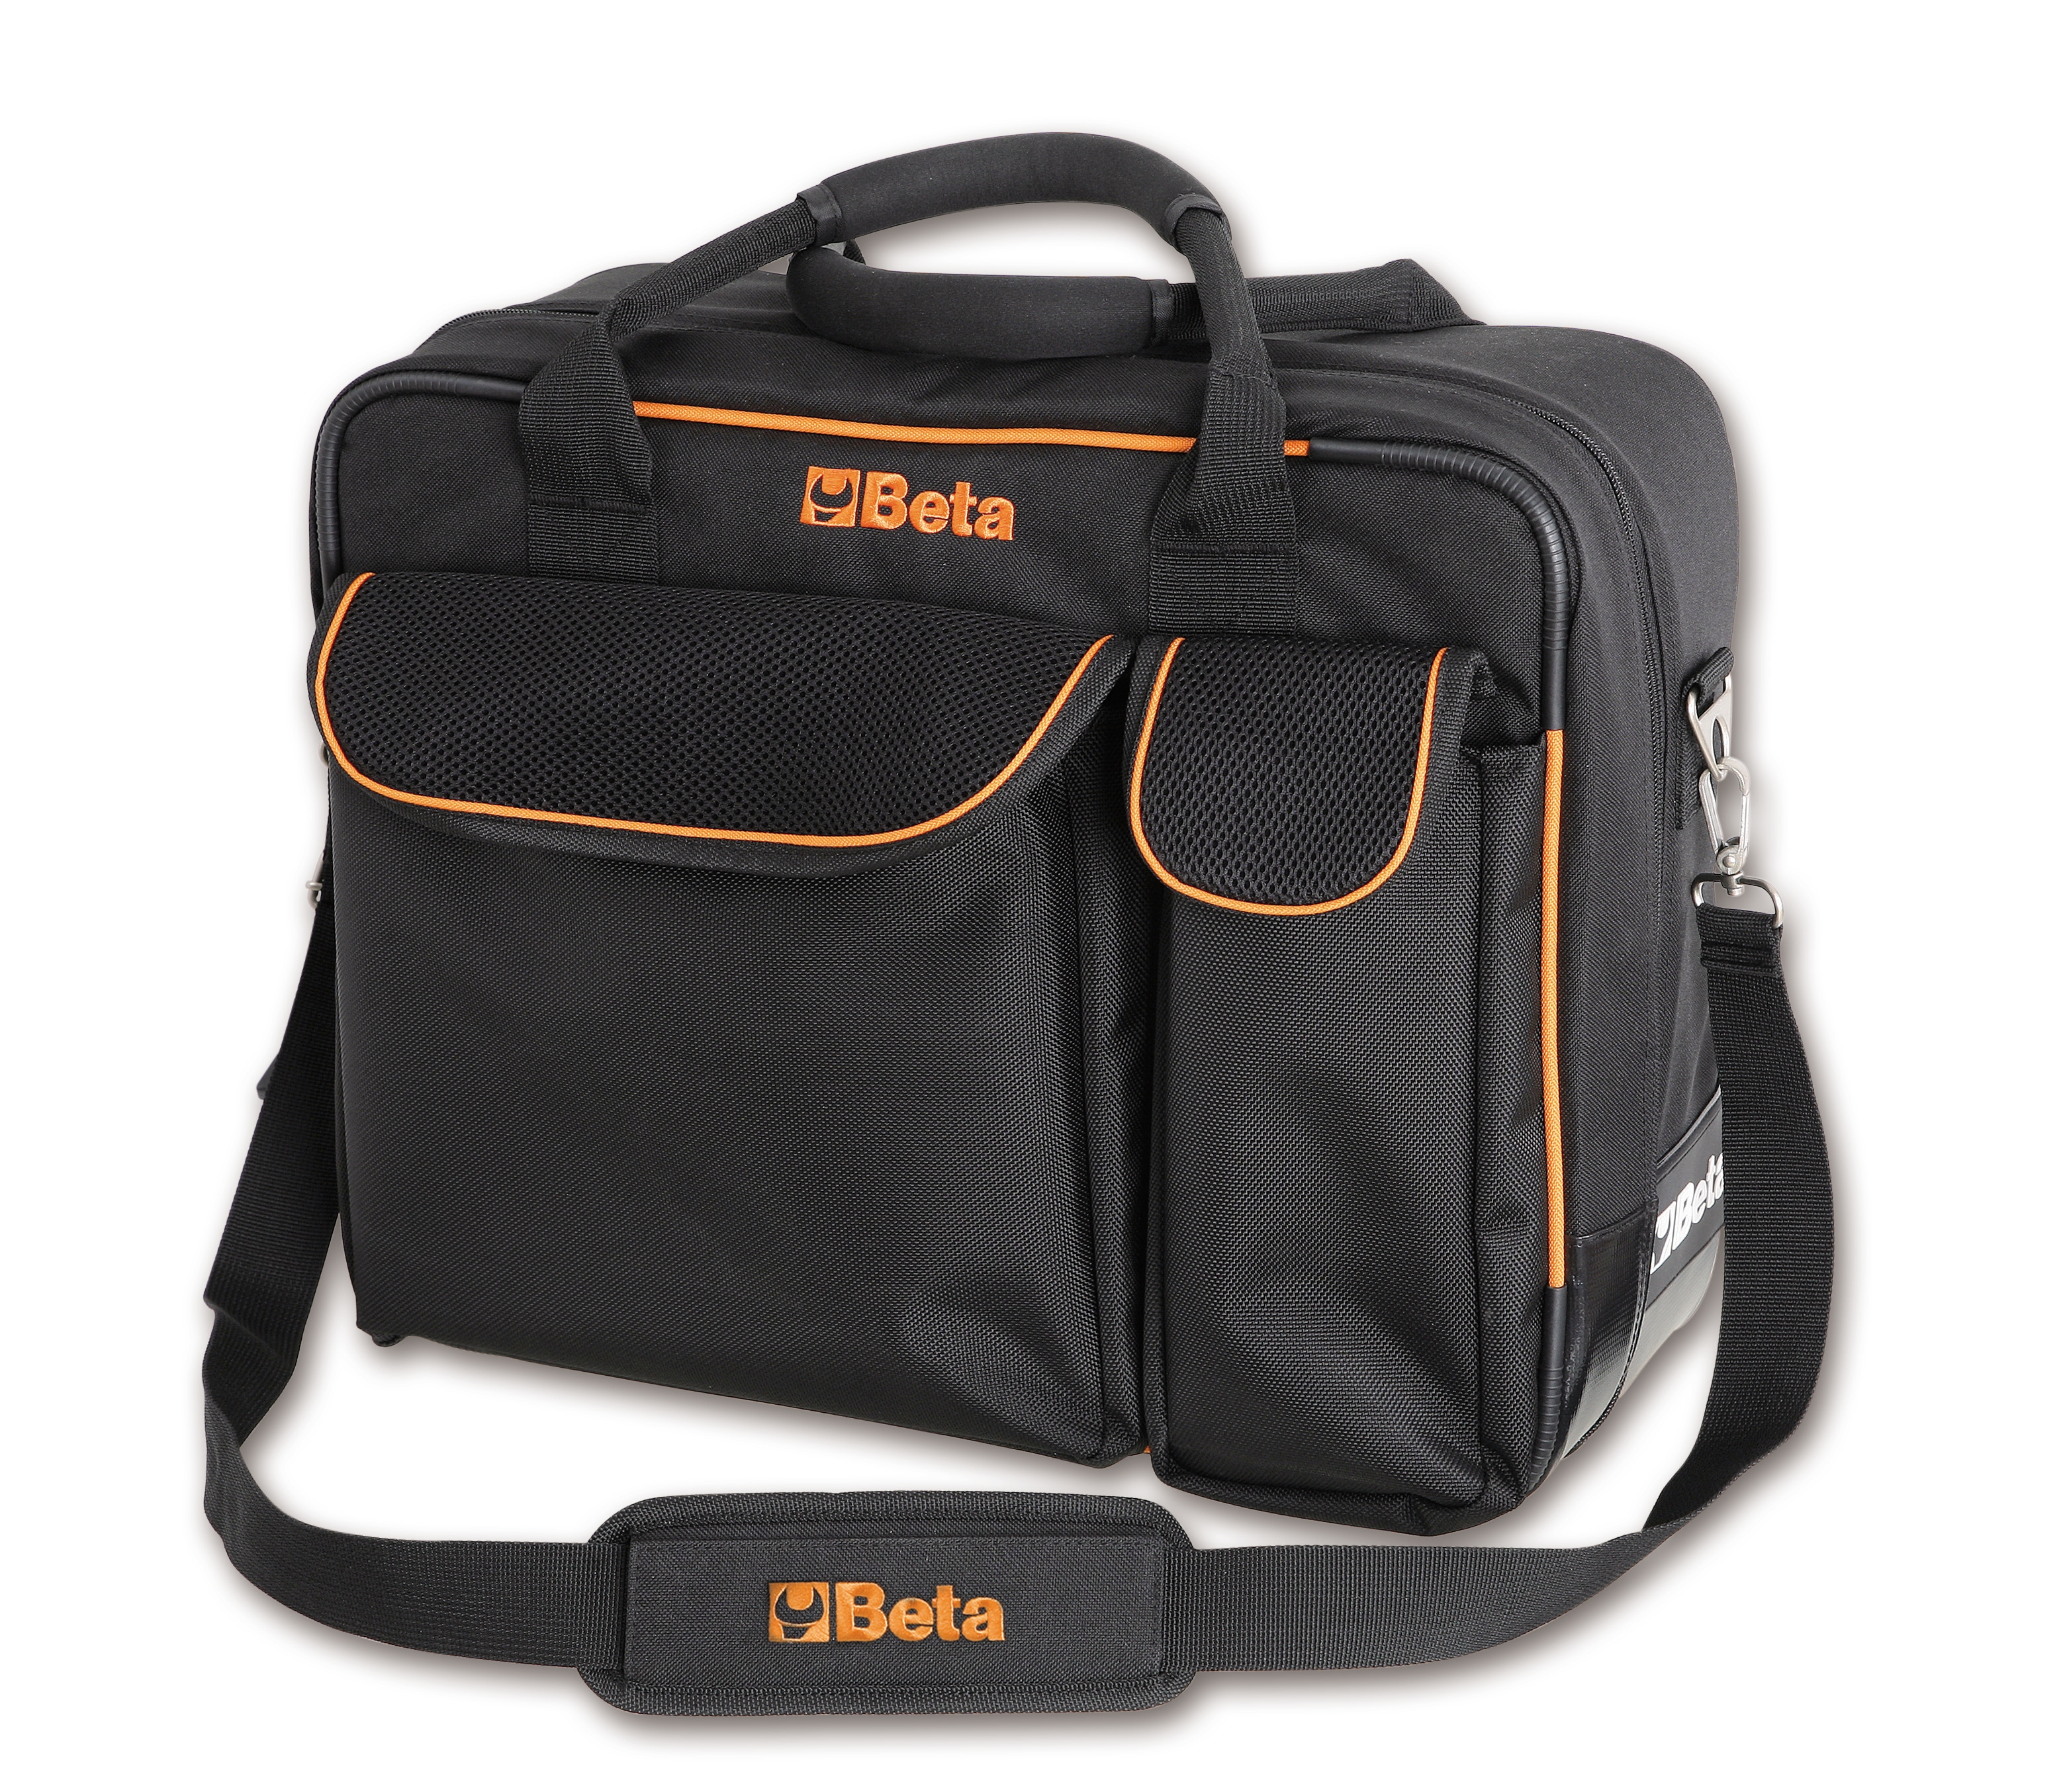 Τσάντα Εργαλείων από Τεχνικό Υφασμα Αδεια C7 - 2107 BETA